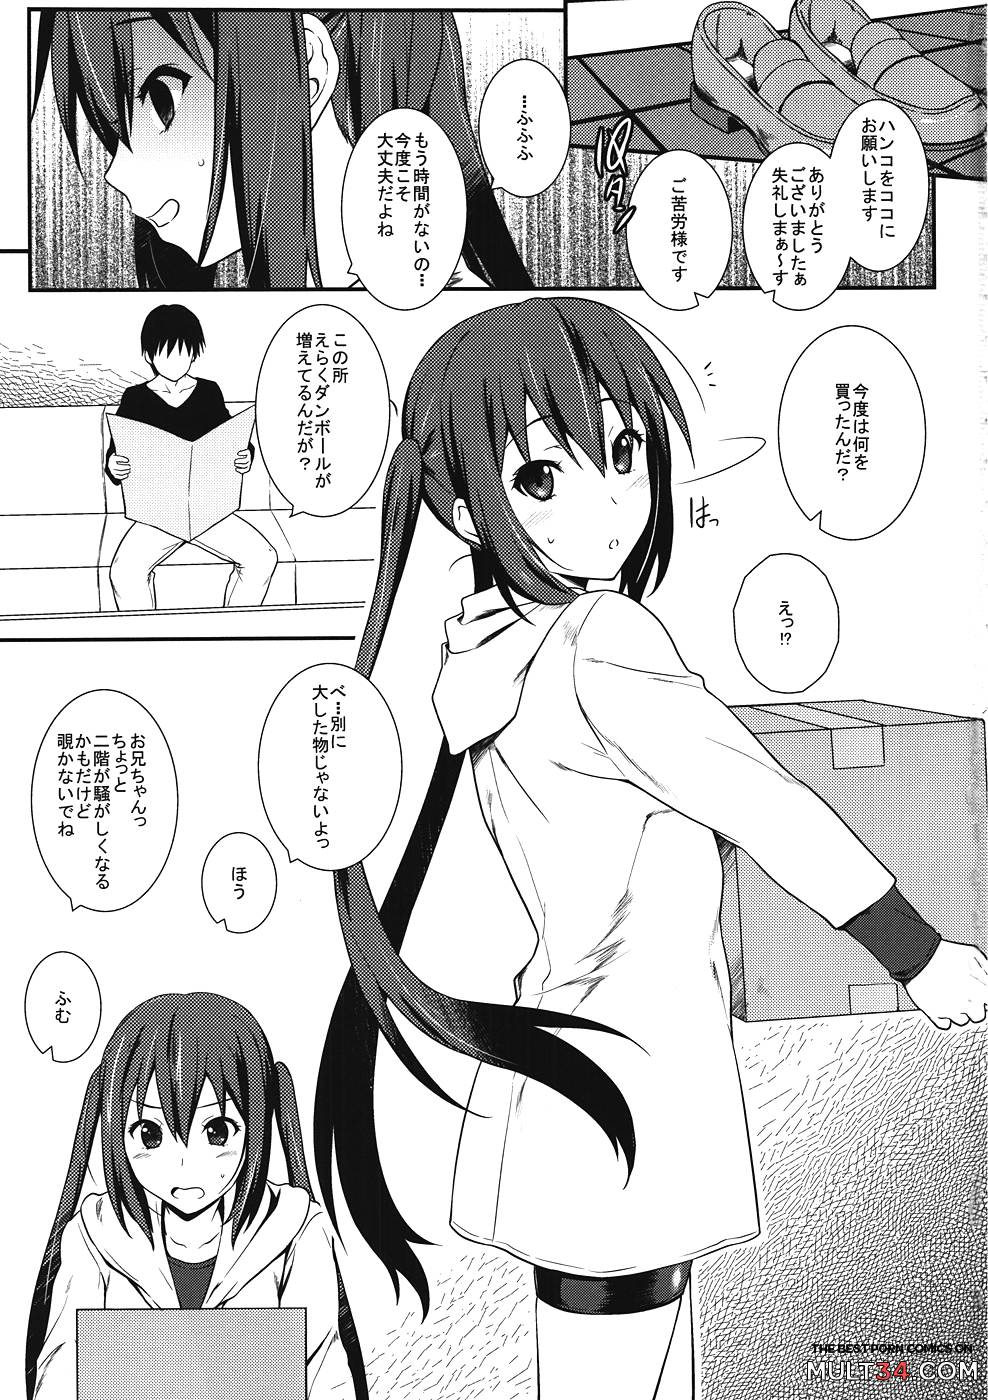 Azusa no Shintai Kensa Daisakusen page 2